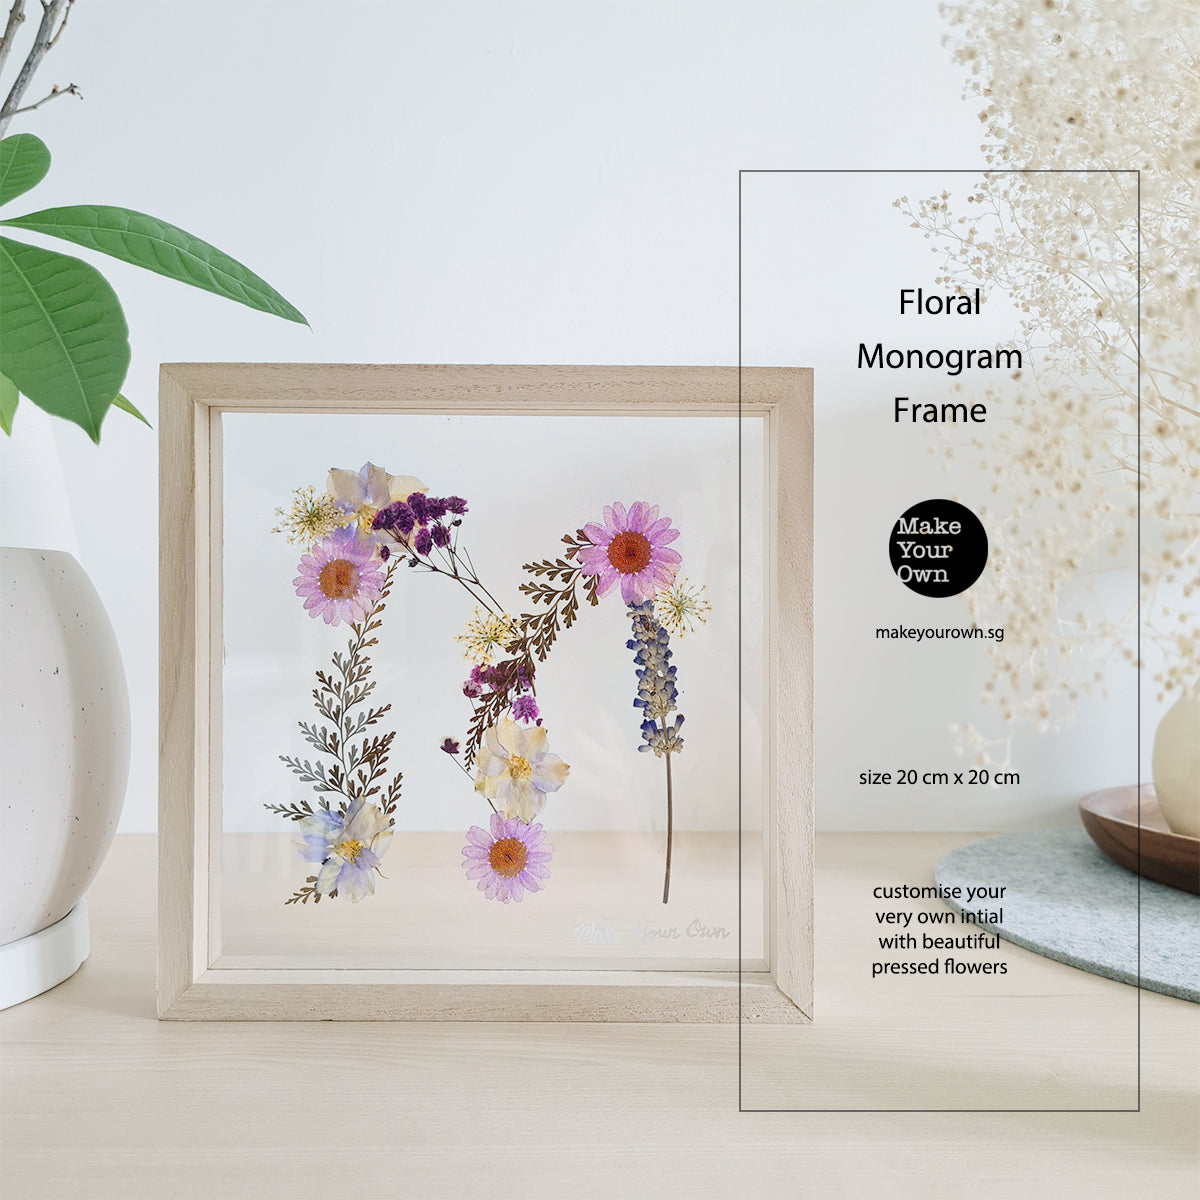 Corporate Floral Monogram Frame Workshop